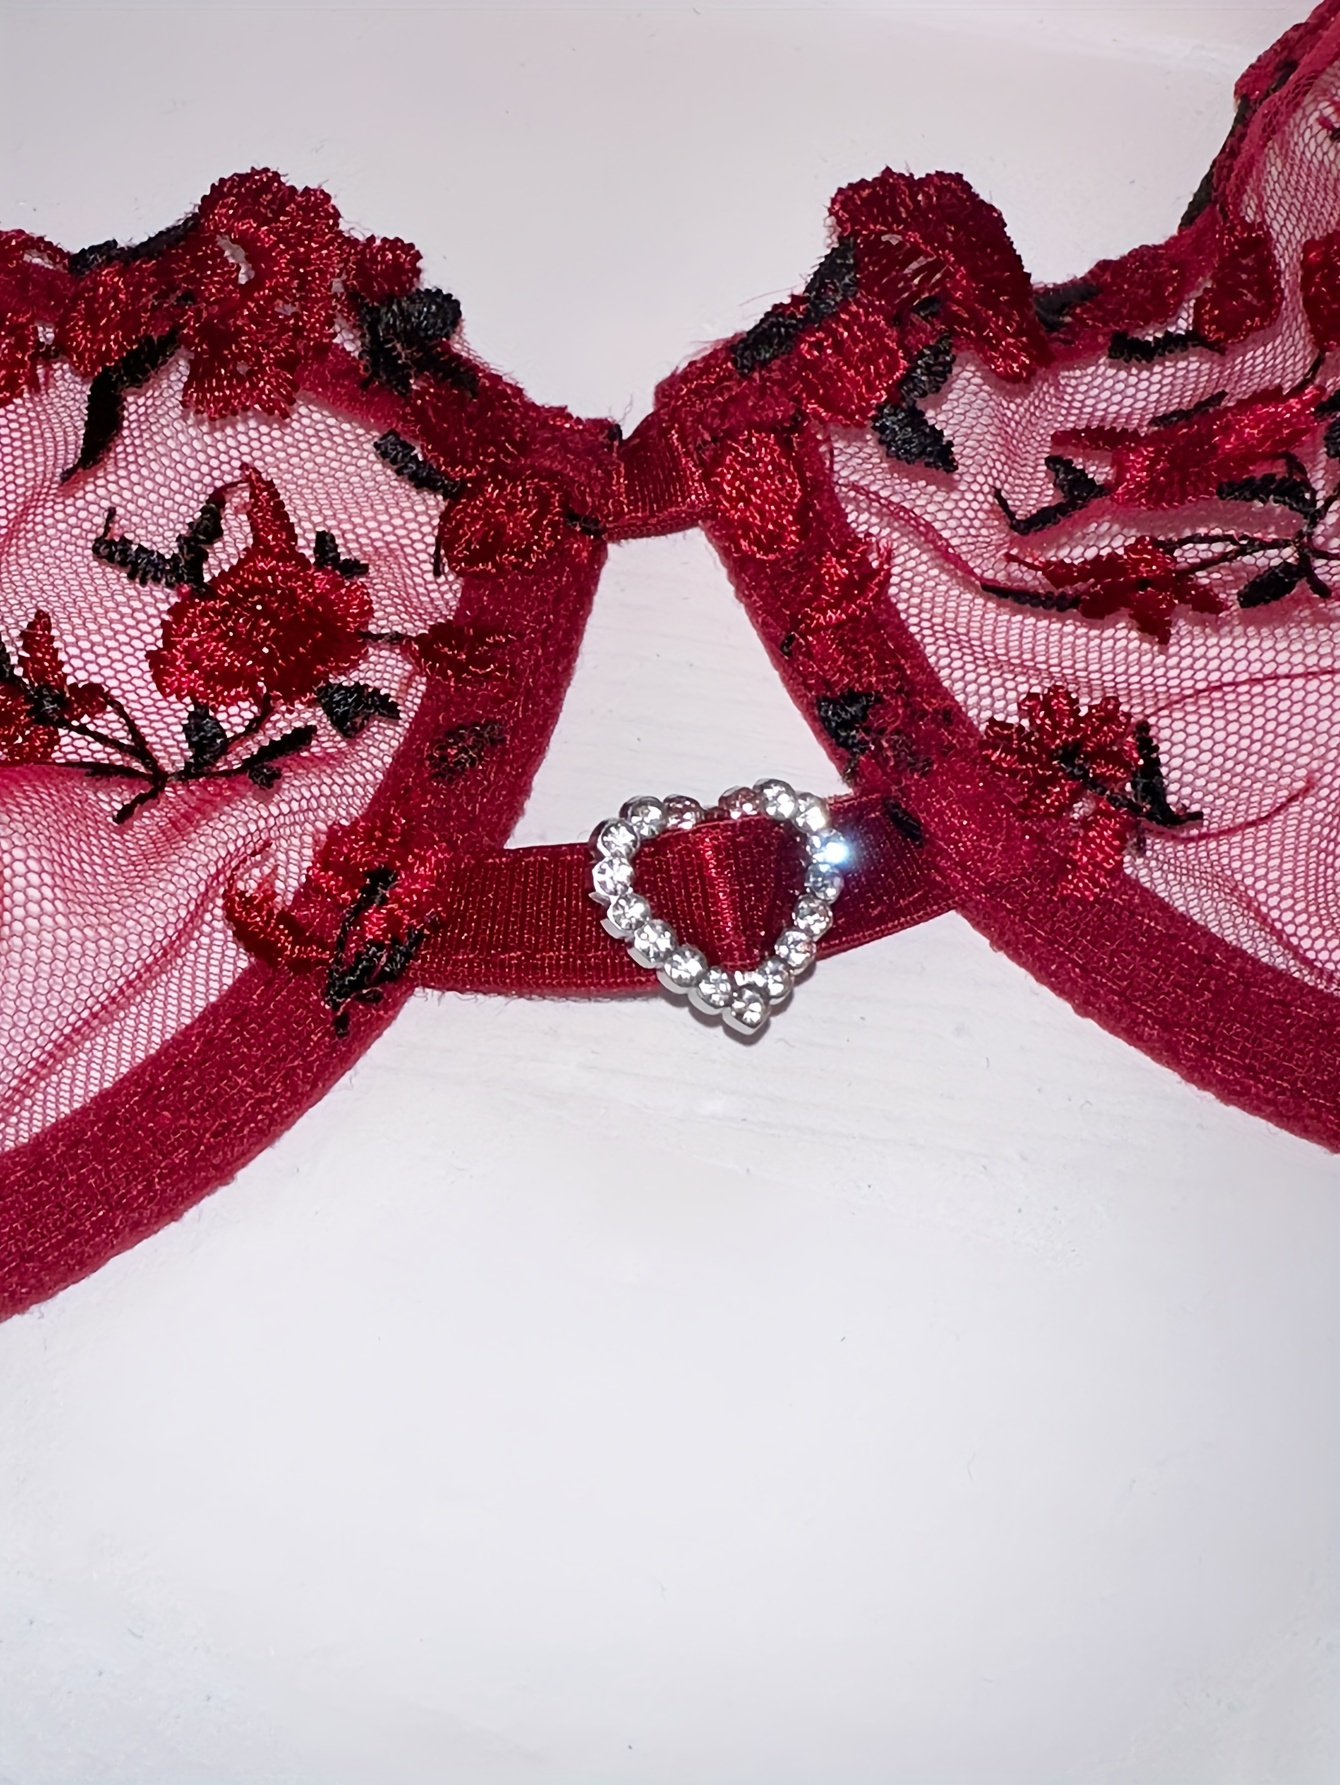 Transparent lace lingerie set from Honey Birdette! 